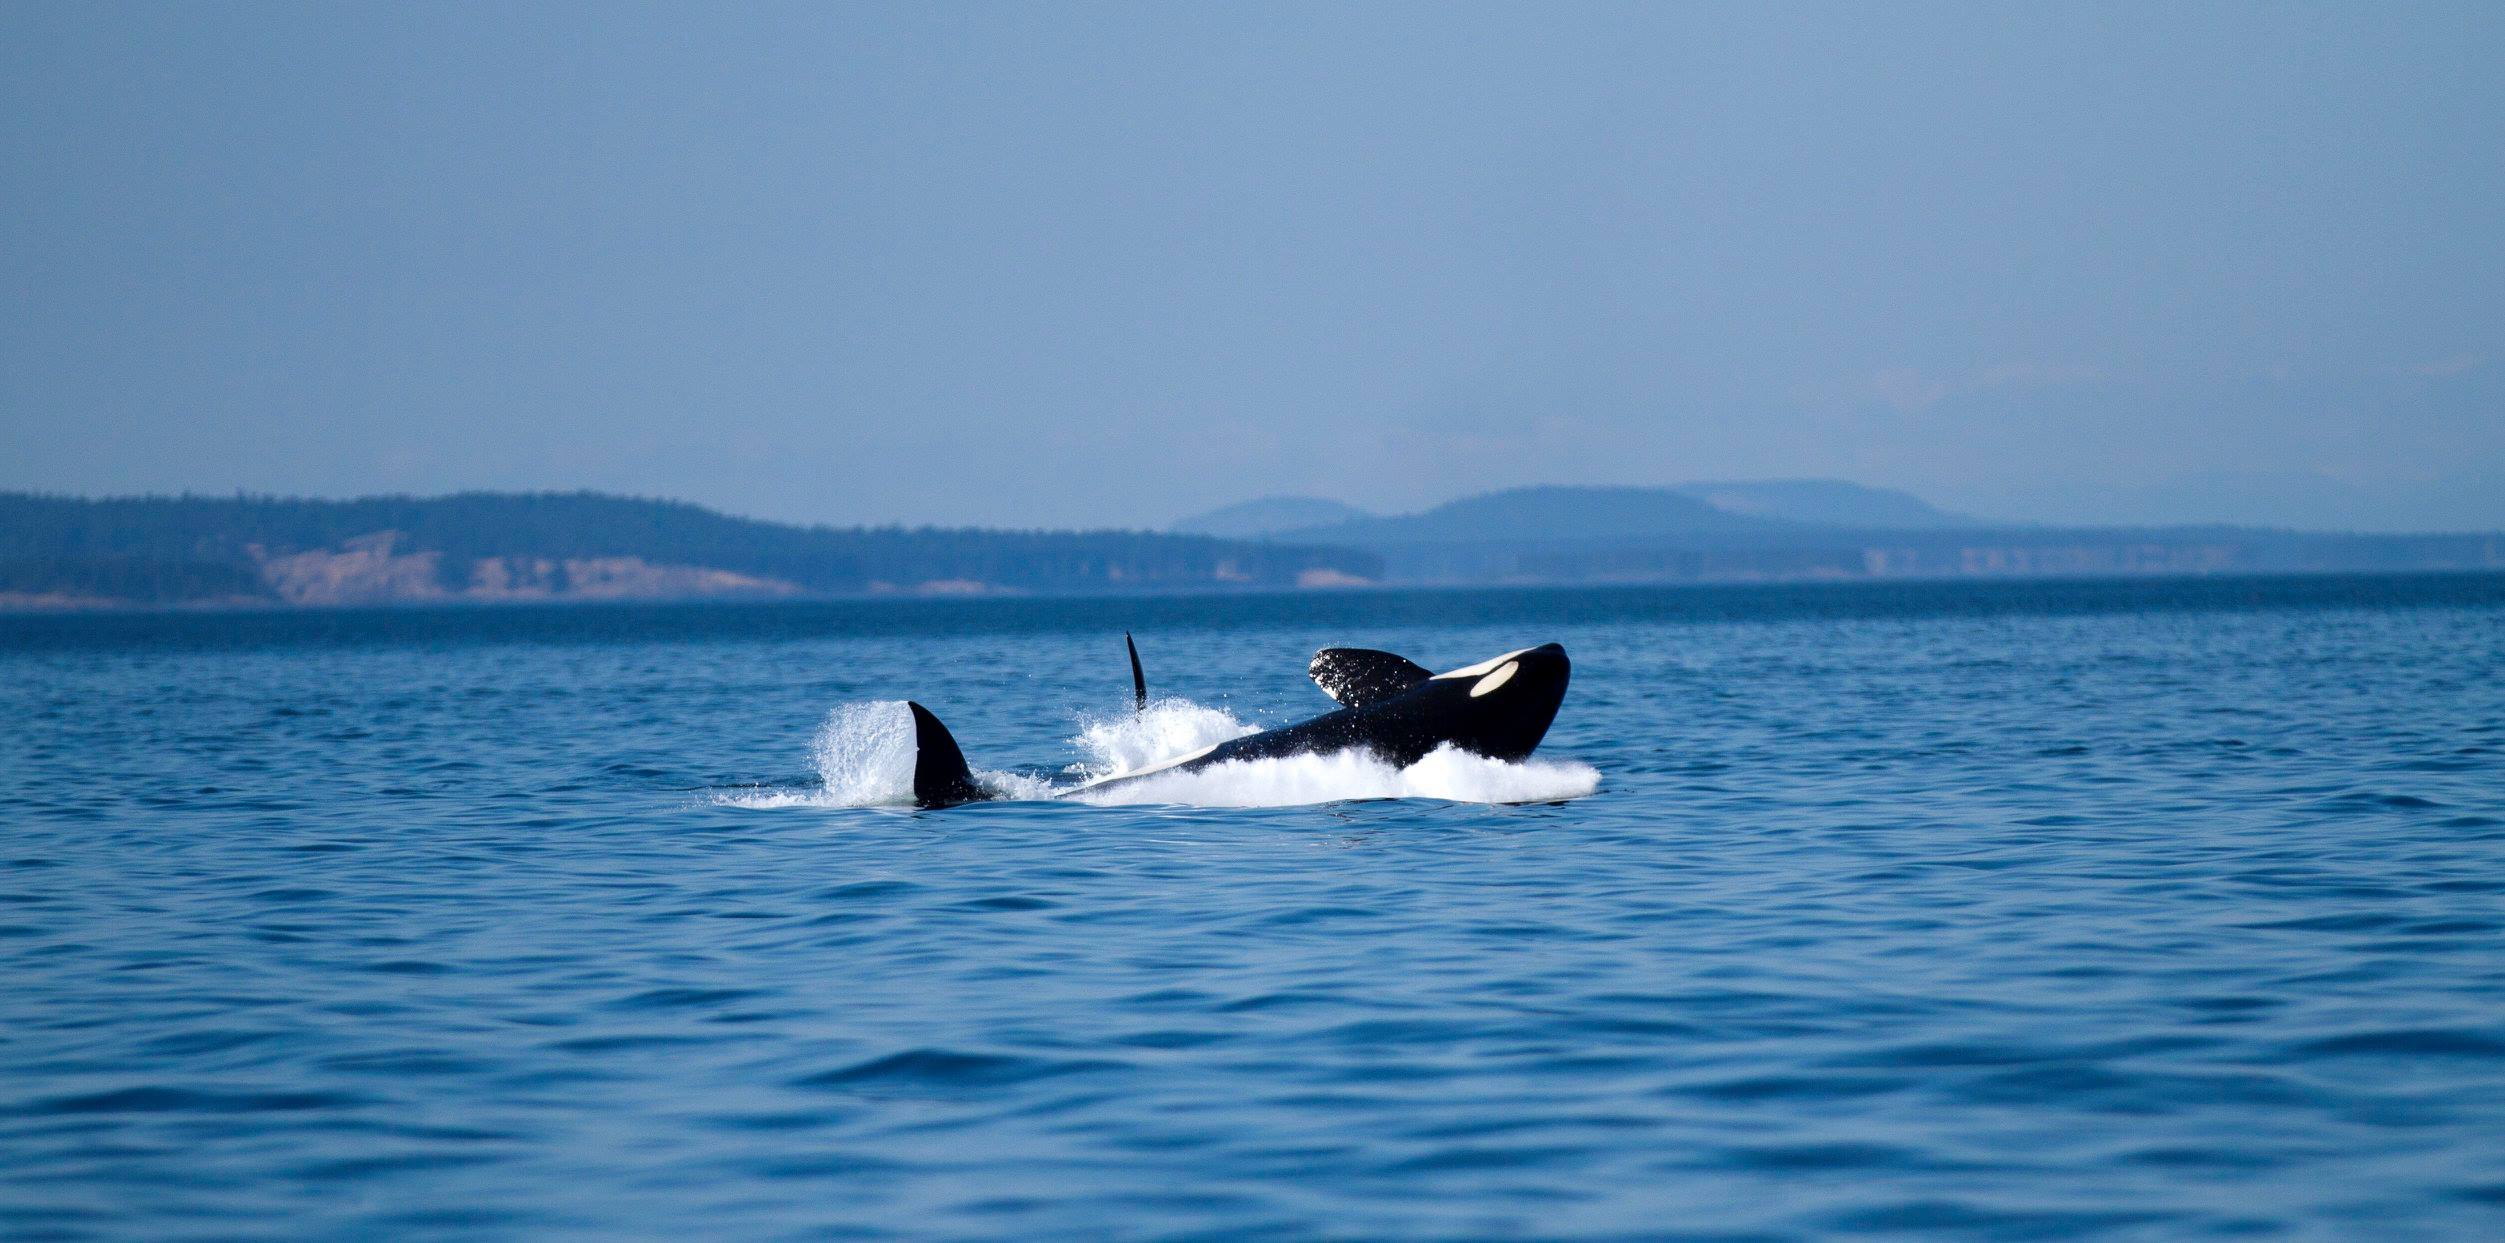 Le Corps législatif californien adopte une loi historique pour mettre un terme à la captivité des orques